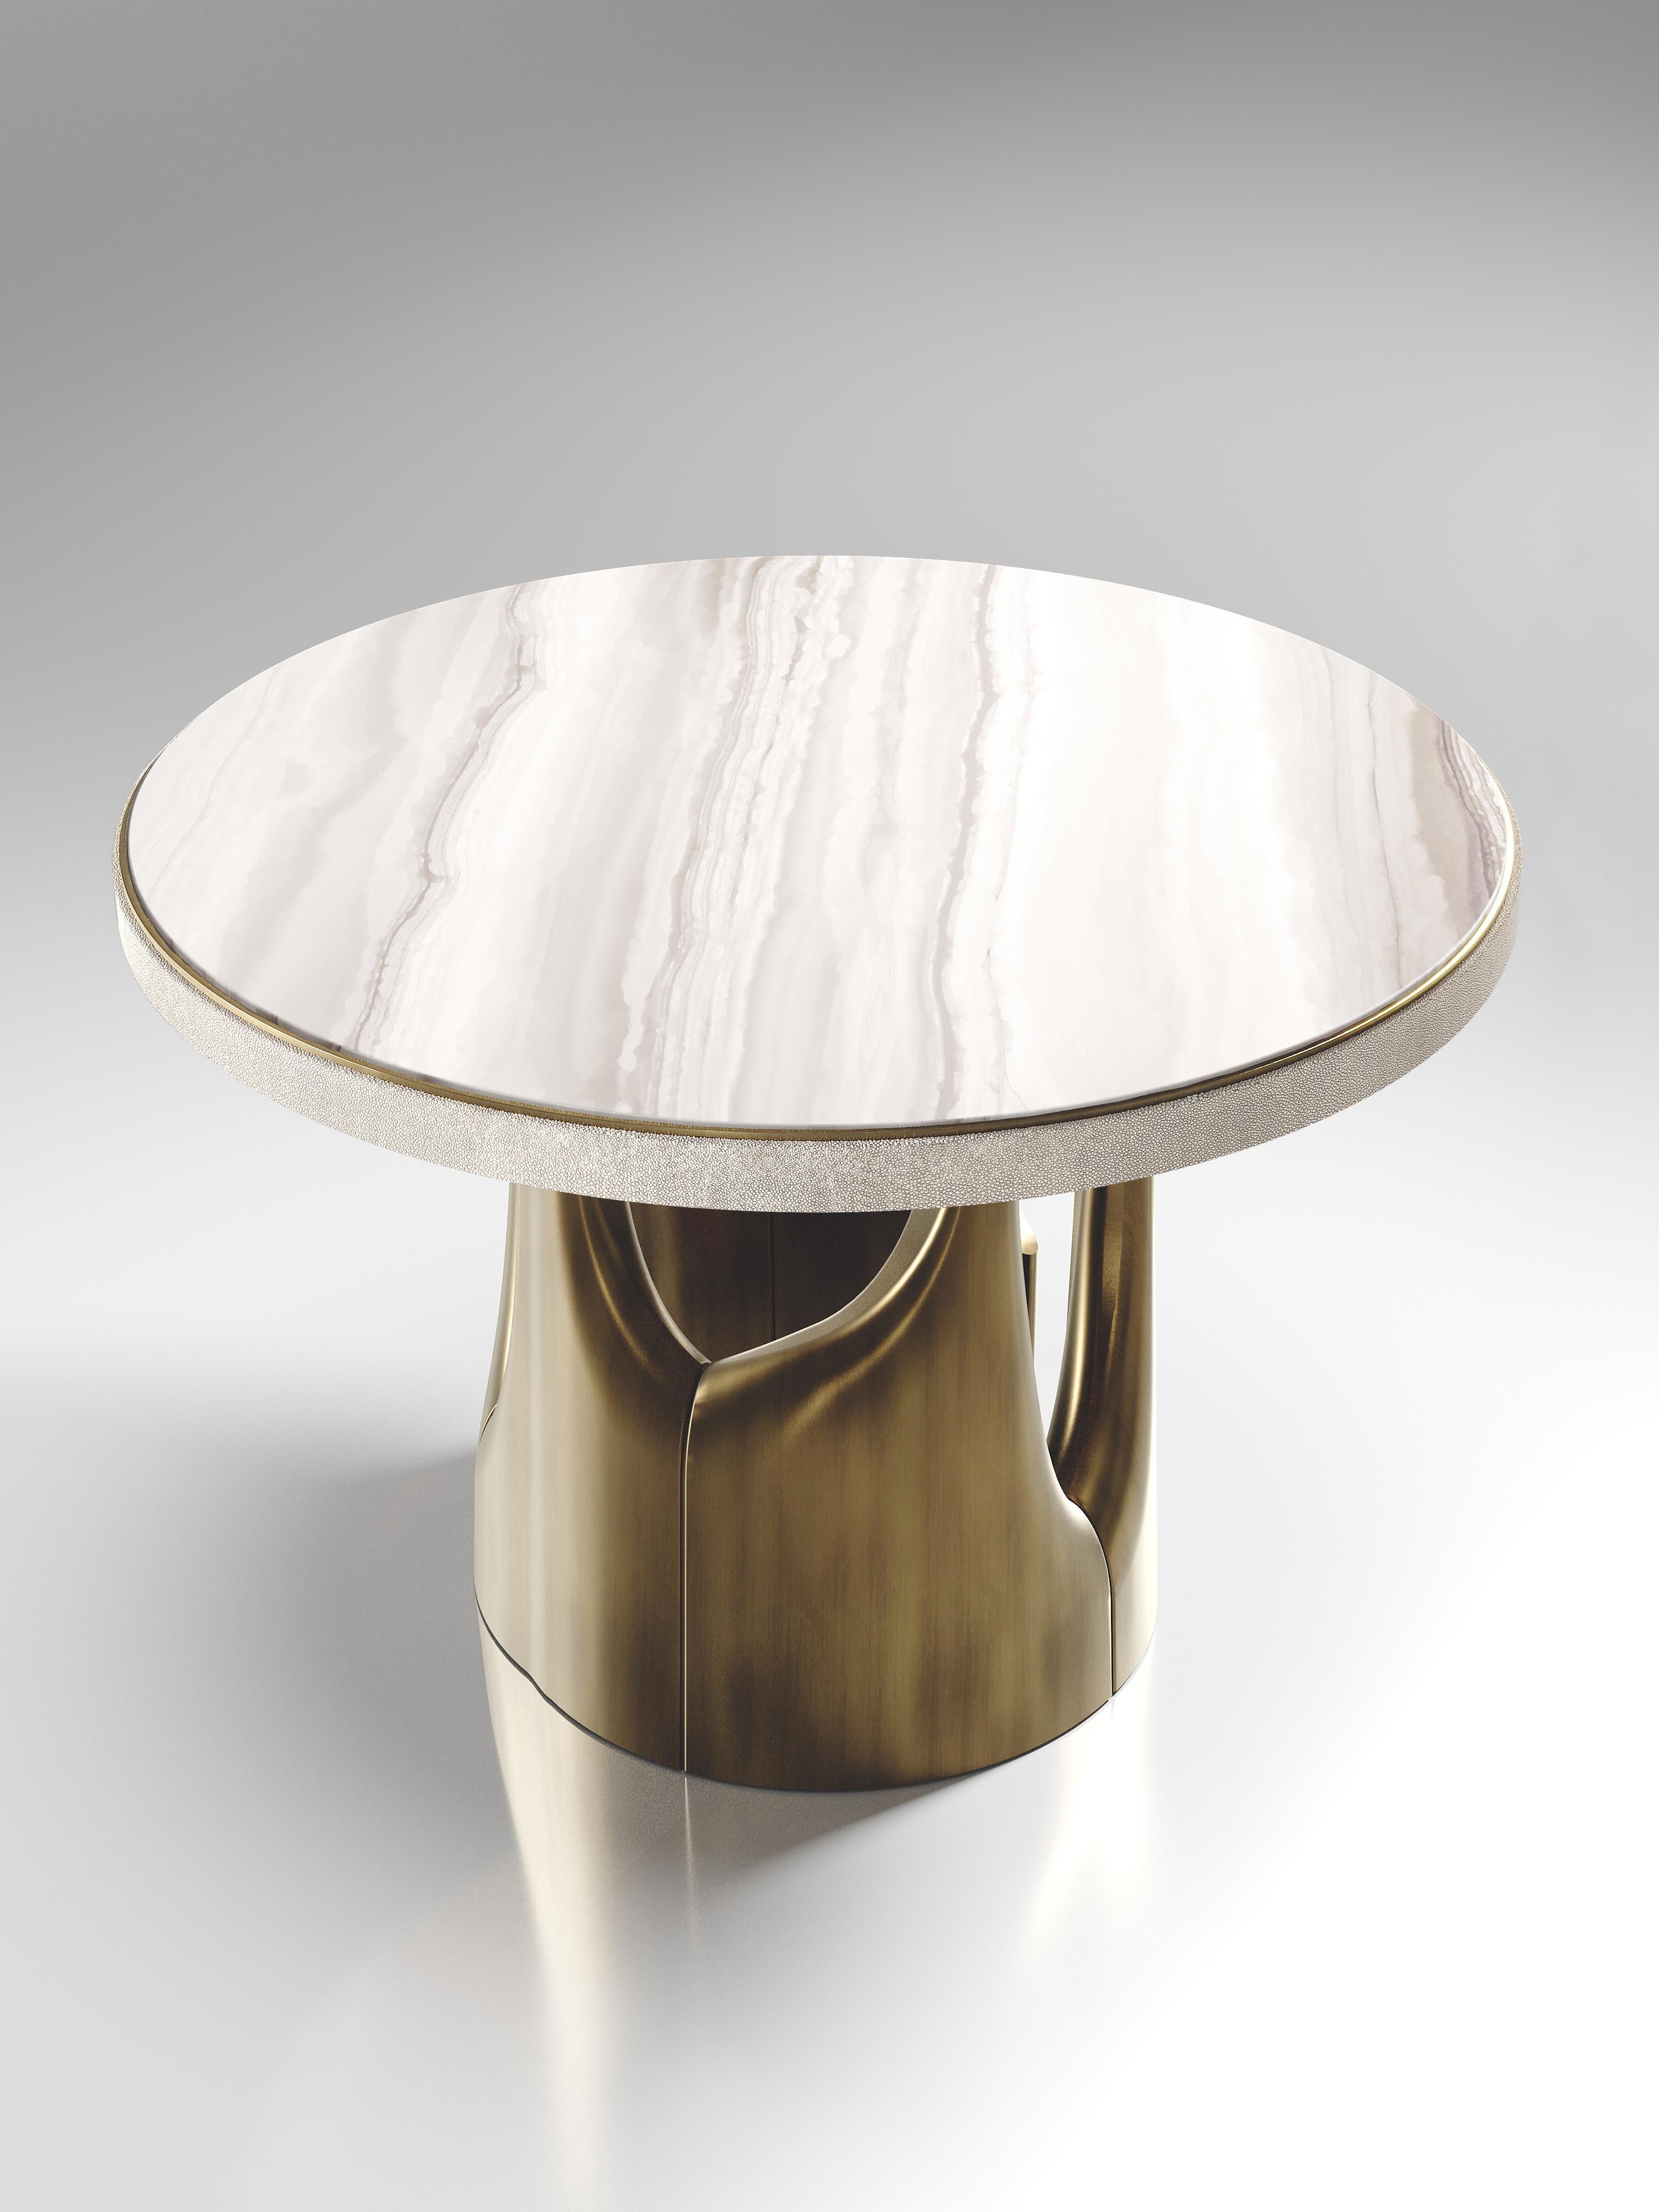 La table de petit-déjeuner triptyque de R&Y Augousti est une étonnante pièce sculpturale à multiples facettes. Les magnifiques détails gravés à la main sur la base en bronze-patine témoignent de l'incroyable travail artisanal d'Augousti. Le plateau